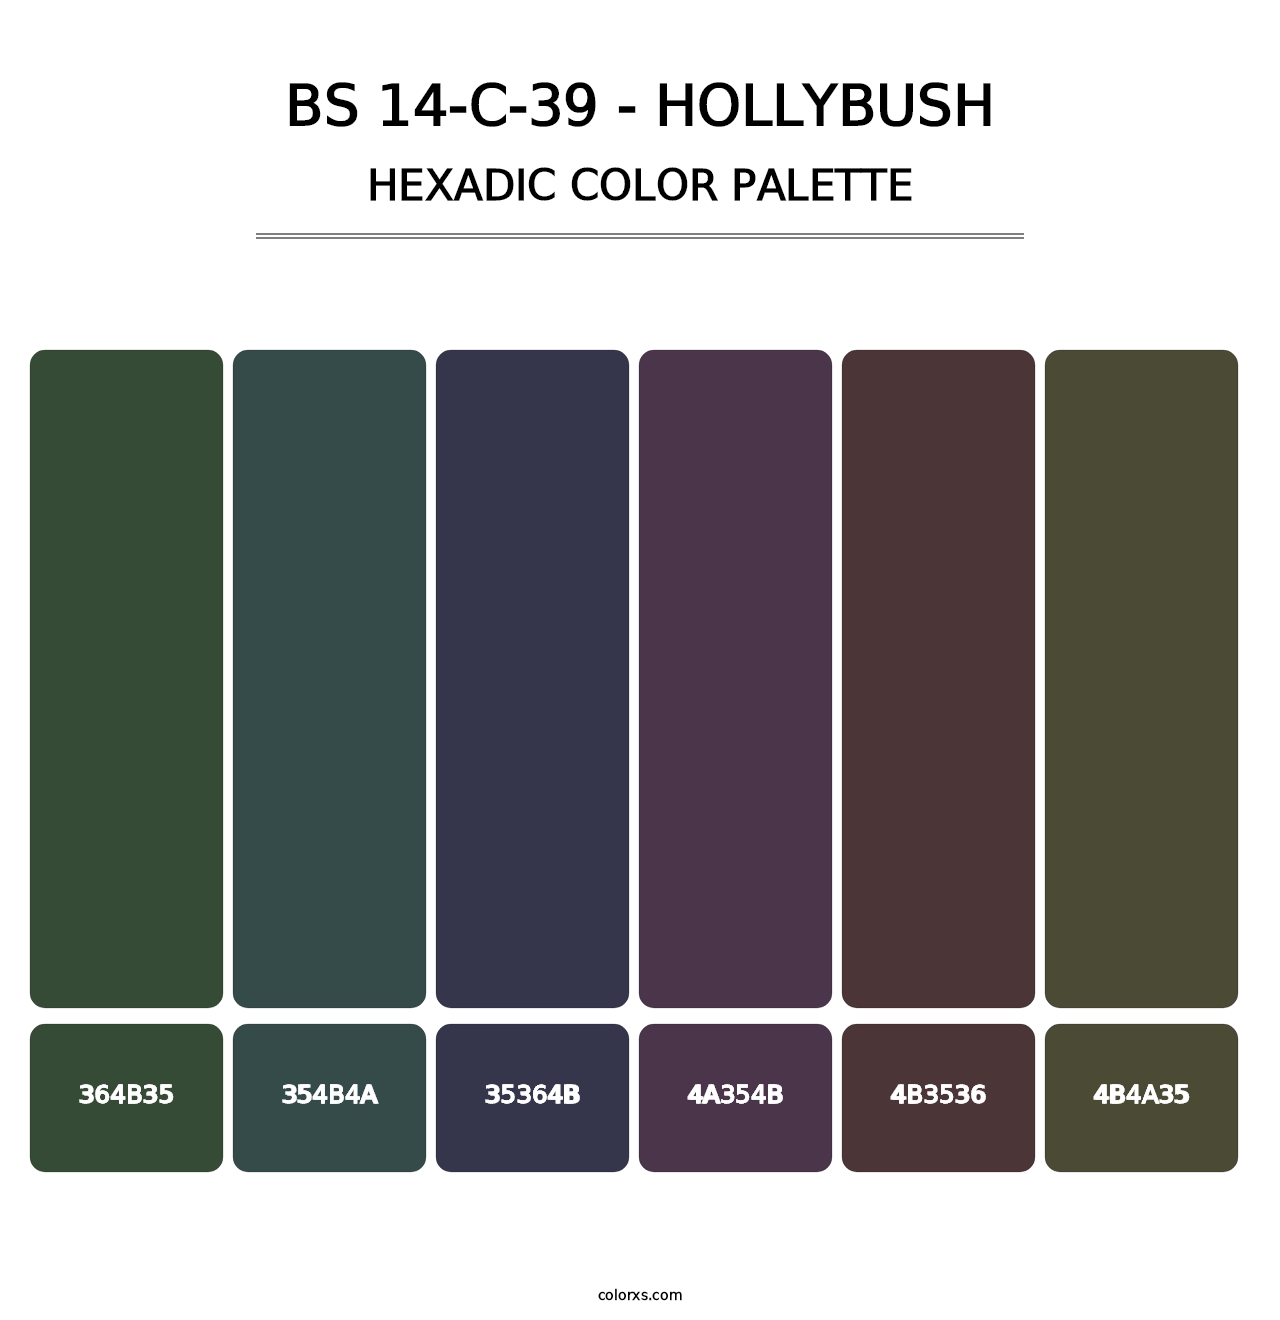 BS 14-C-39 - Hollybush - Hexadic Color Palette